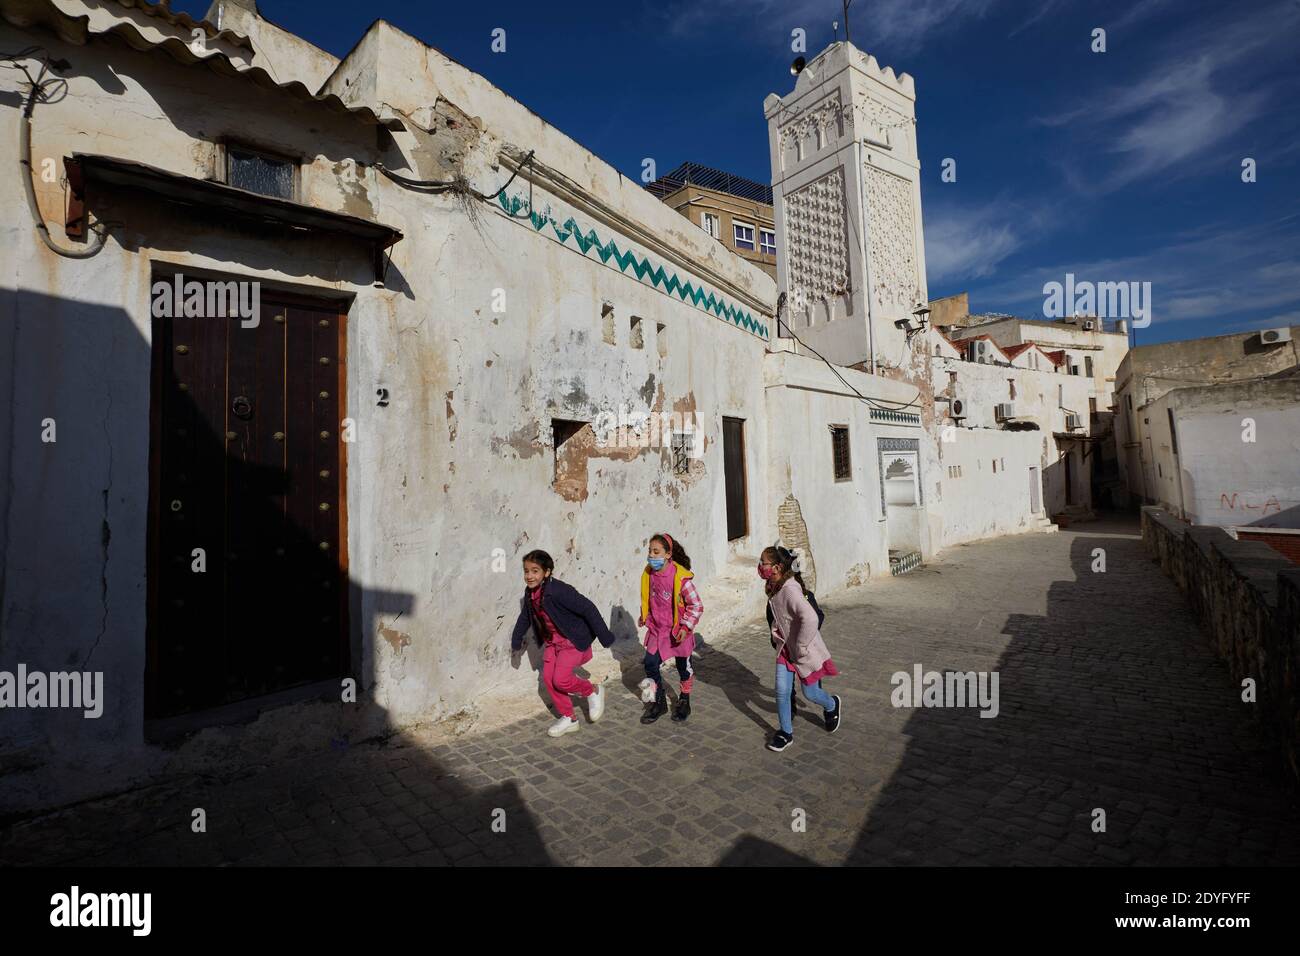 La Casbah d'Alger, en Algérie, ville millénaire classée par l'UNESCO en 1992 Patrimoine mondial, à Al site. Cette vieille médina couvre 105 hectares et se compose de ruelles abruptes et d'un enchevêtrement de maisons construites sur une pente raide de 118 m de hauteur. Selon l'UNESCO, les opérations de restauration du patrimoine bâti de la Casbah entreprises dans le cadre du Plan de sauvegarde contribuent à maintenir l'intégrité du site. Toutefois, il existe des menaces qui sont liées en particulier à des interventions incontrôlées. En outre, plusieurs maisons sont en ruines ou menacent de tomber en ruines. La Casbah est également connue Banque D'Images